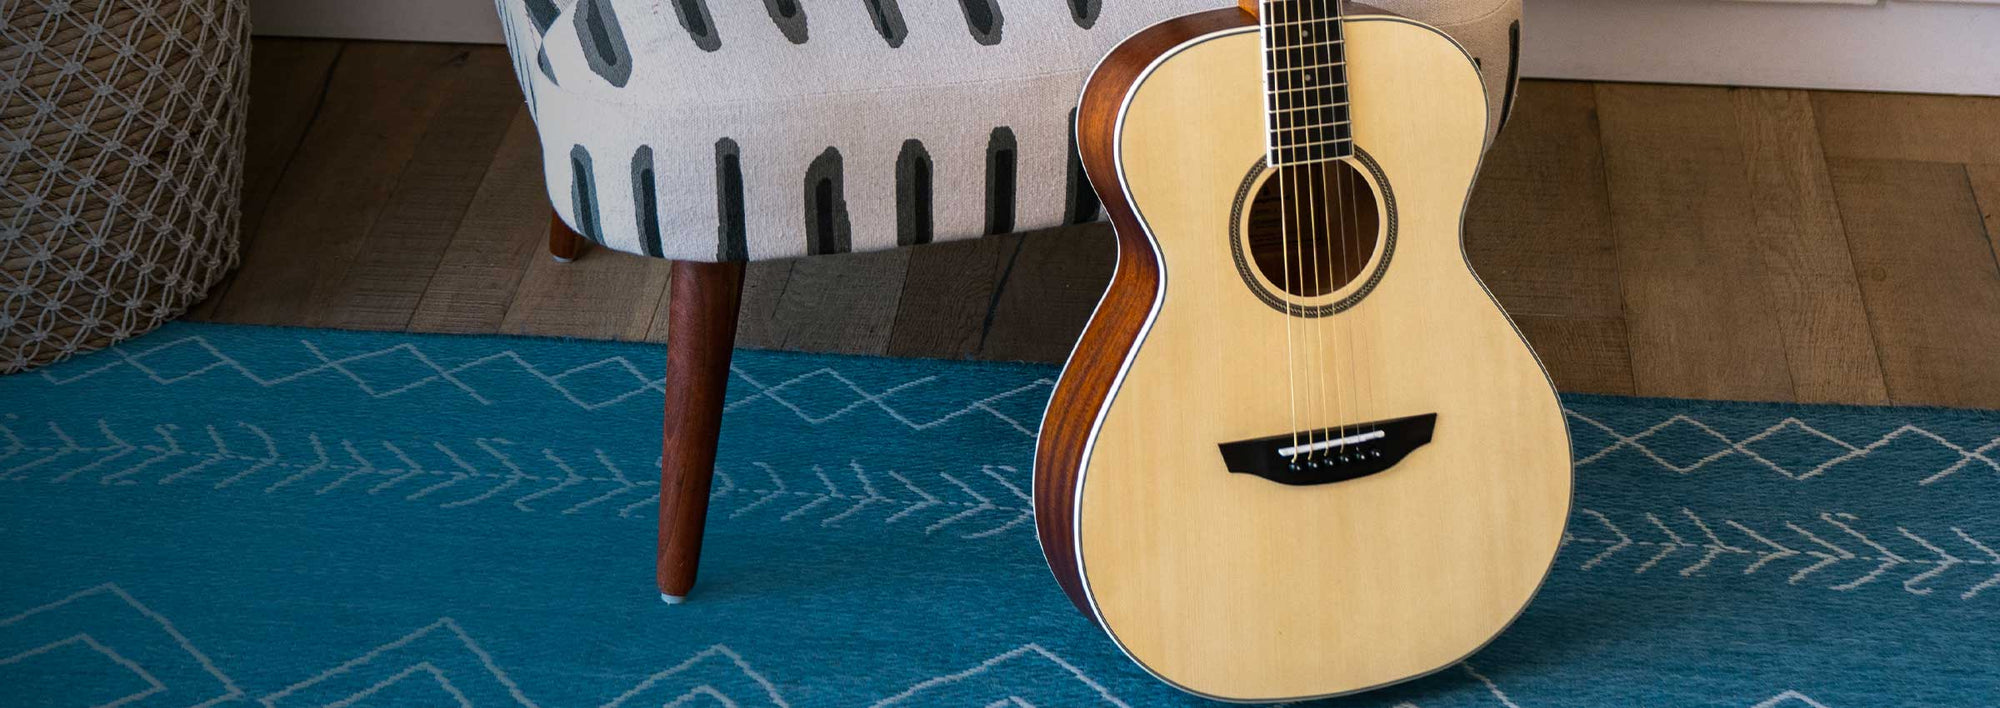 Dana spruce guitar on a blue rug